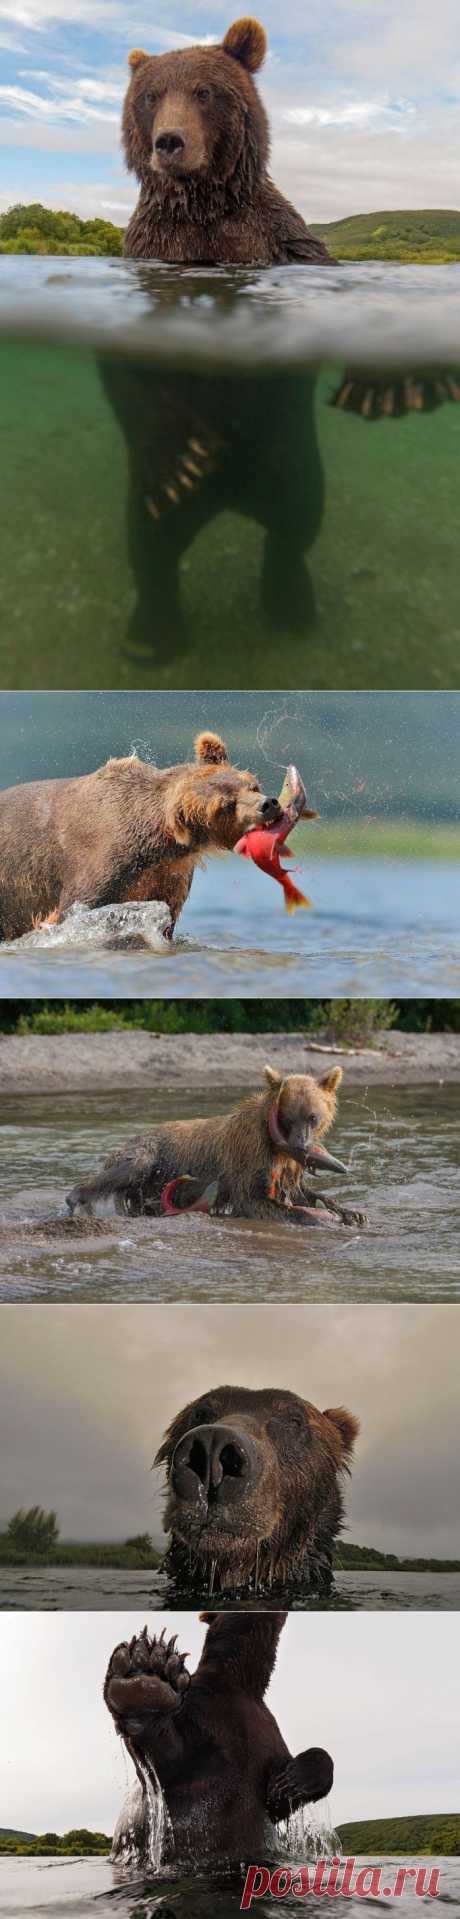 Впечатляющие снимки медведей и не только